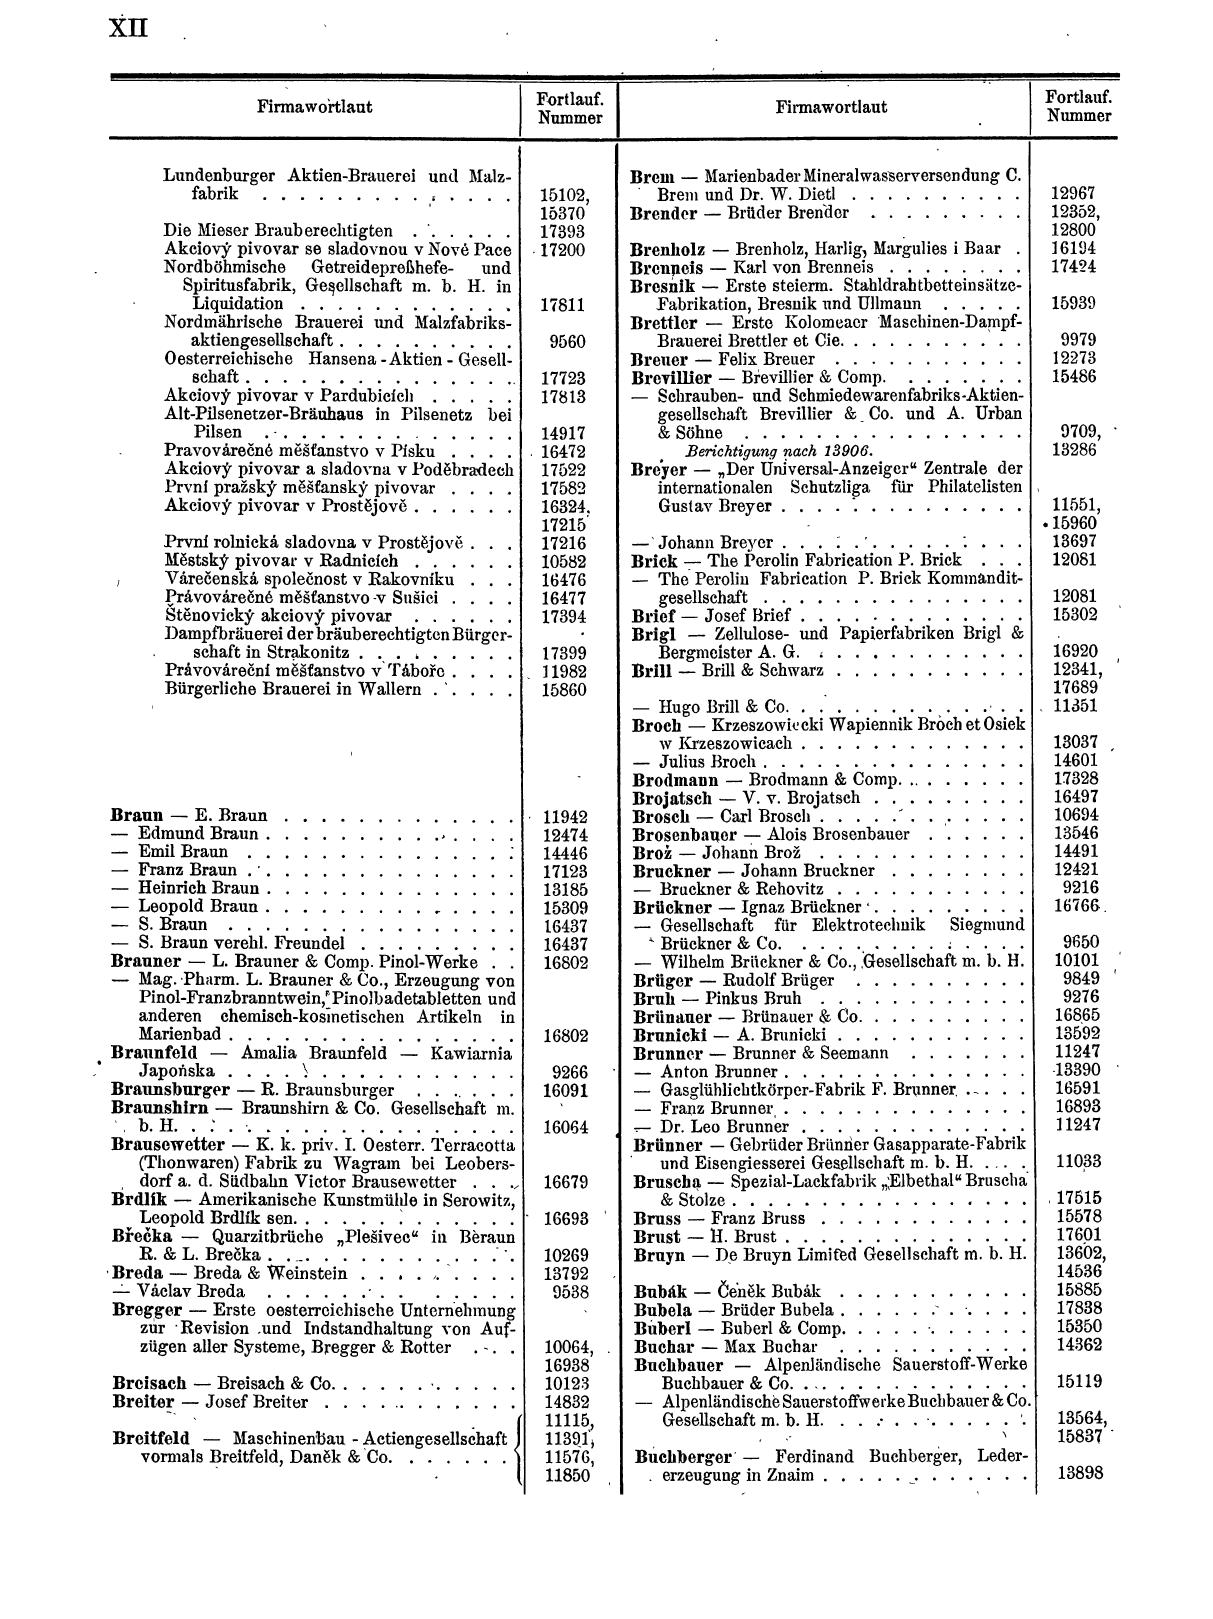 Zentralblatt für die Eintragungen in das Handelsregister 1913, Teil 2 - Seite 16